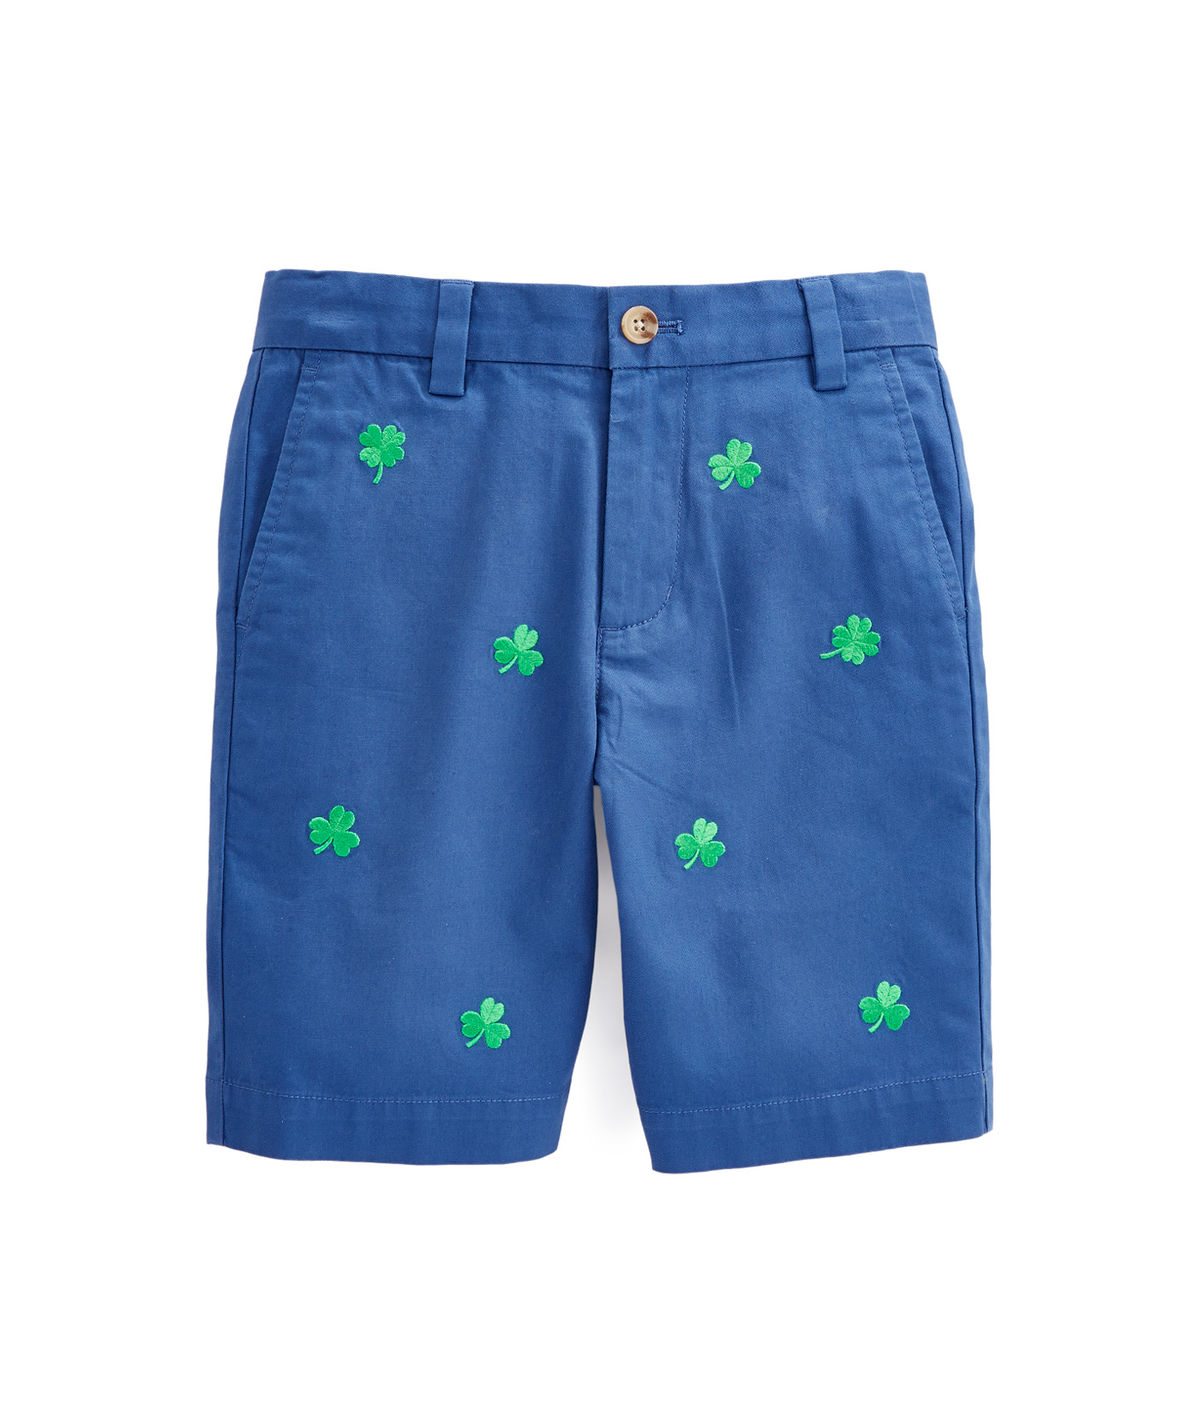 Vineyard Vines Boys Lucky Clover Embroidered Breaker Shorts 